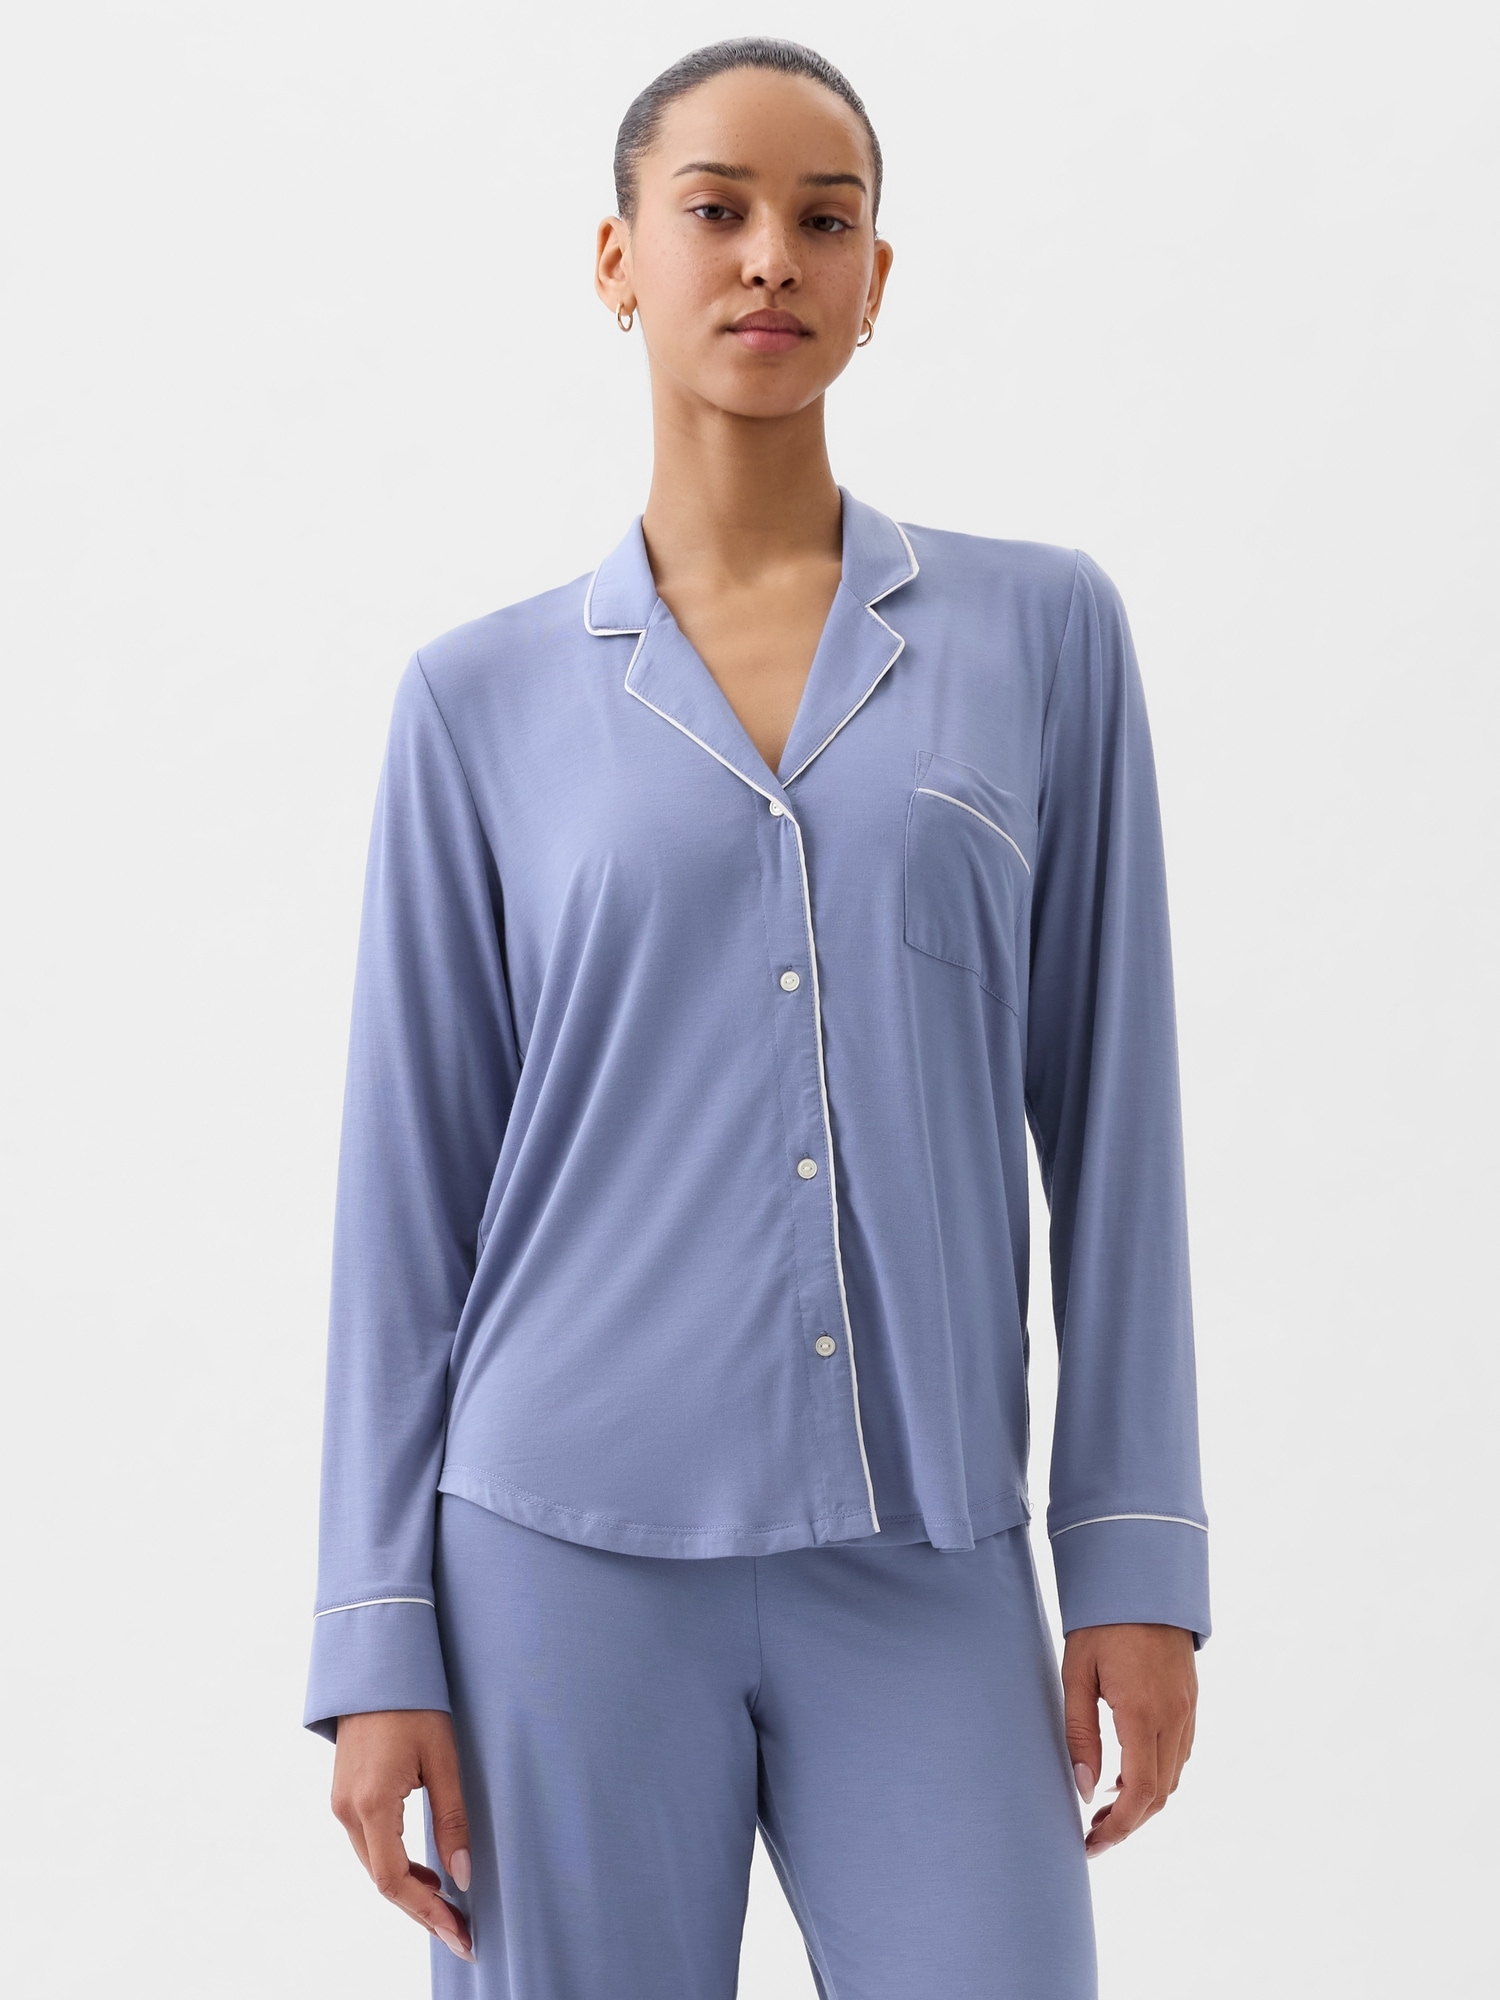 Buy Modal Sleep Tank Top - Order Pajama Tops online 5000008872 - PINK US